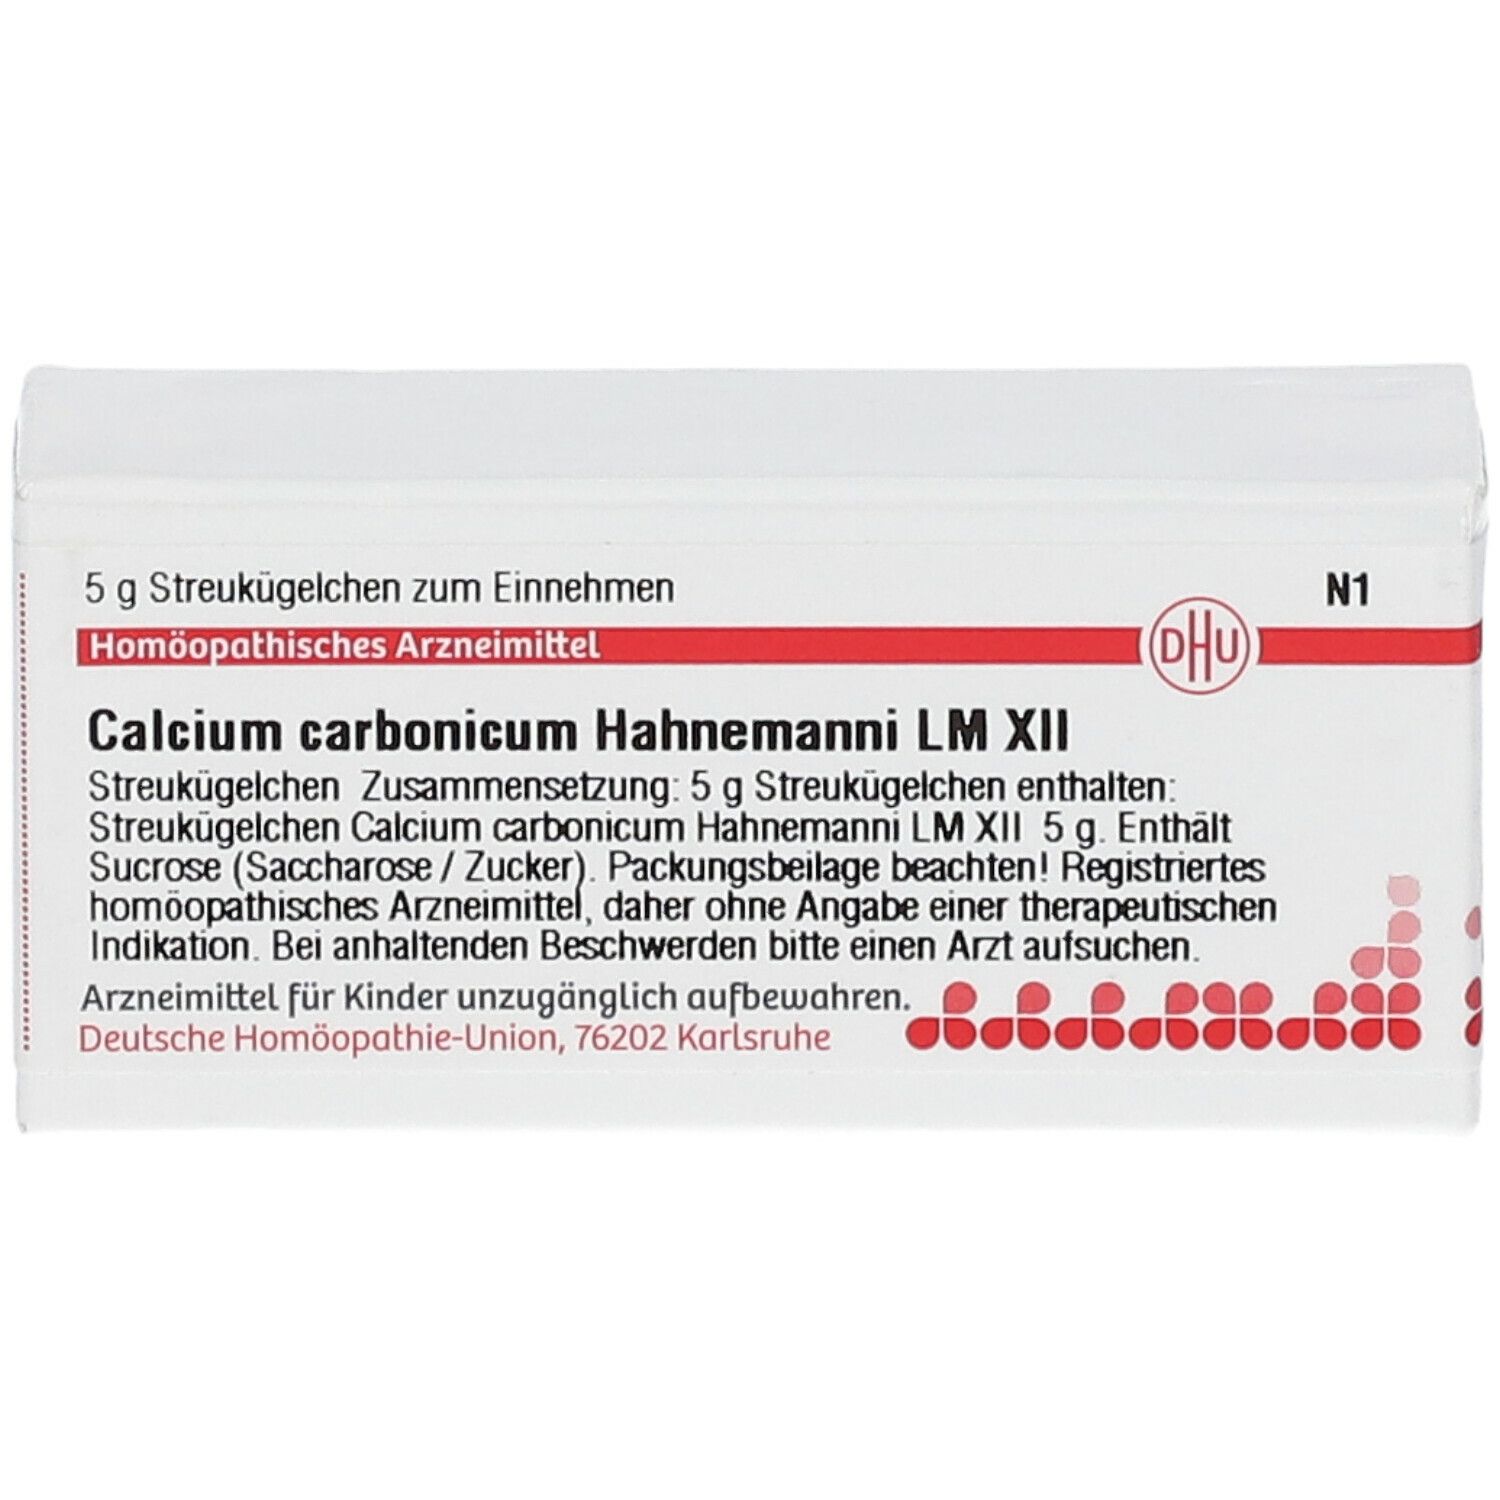 DHU Calcium Carbonicum Hahnemanni LM XII